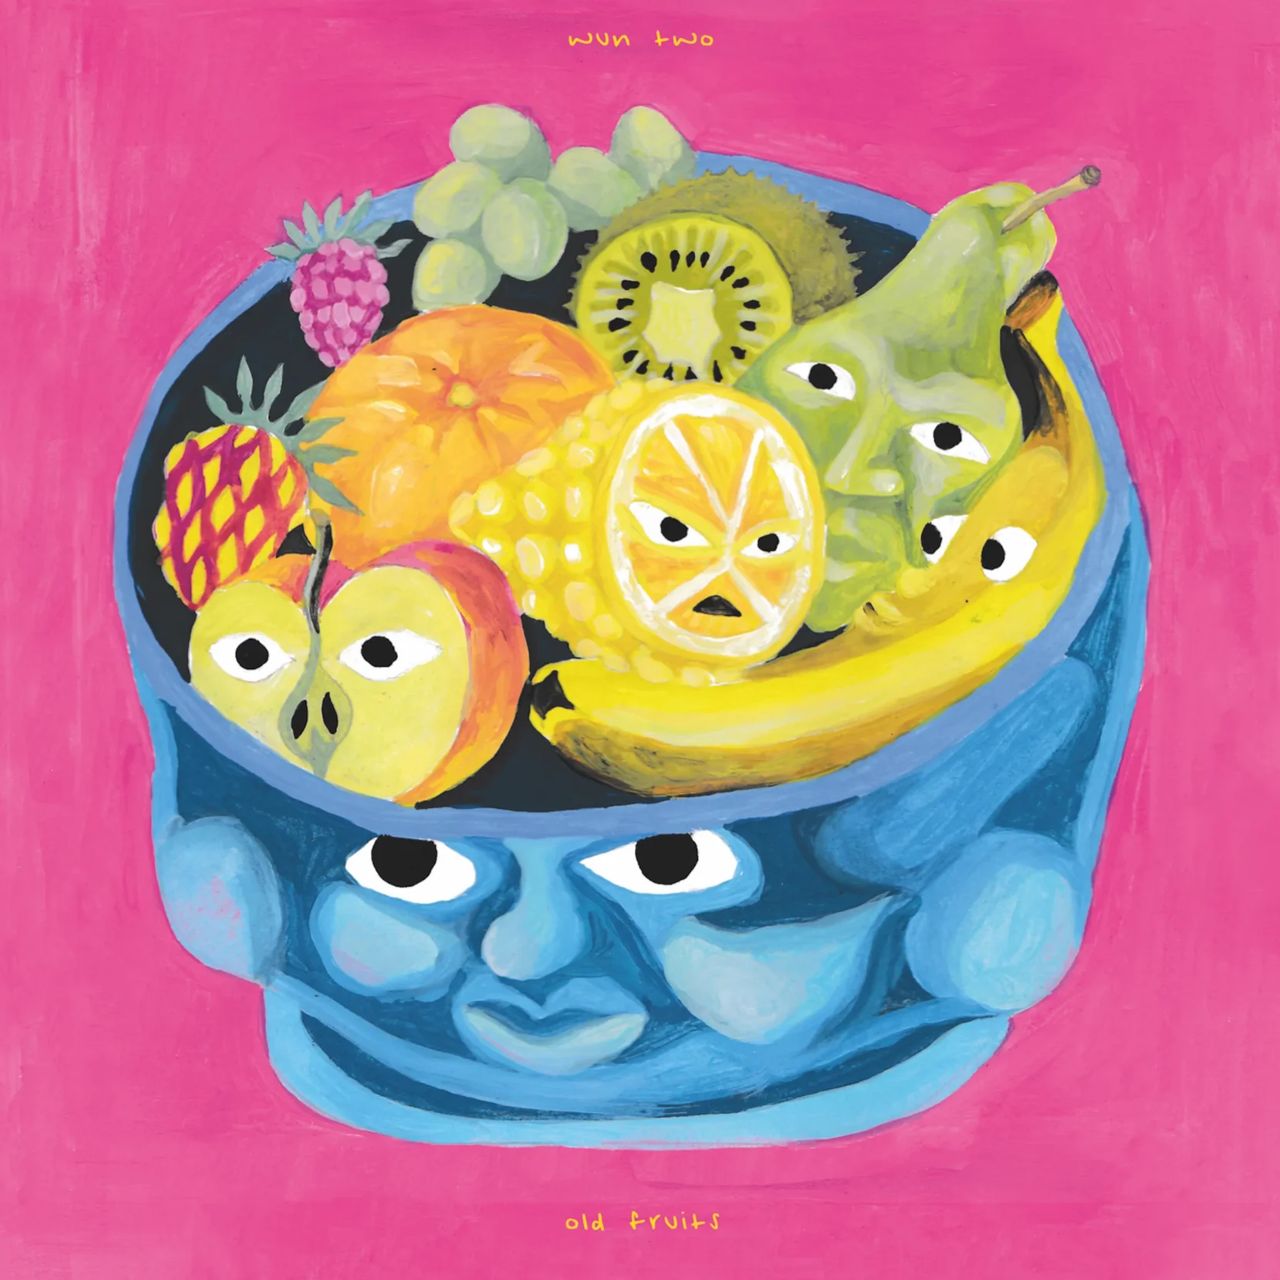 old fruits album art